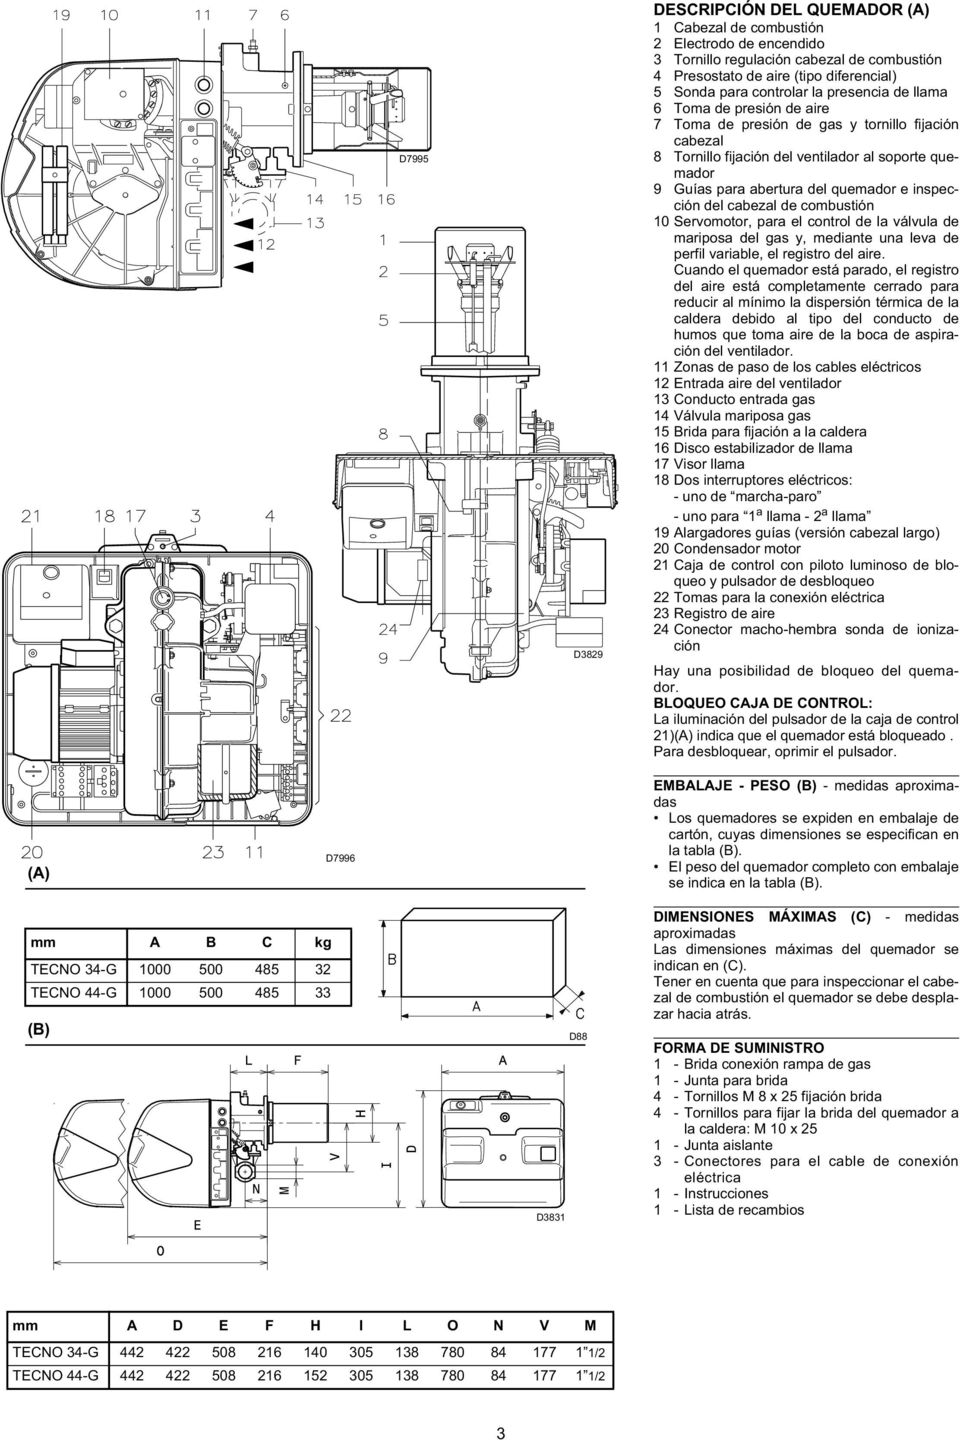 inspección del cabezal de combustión 10 Servomotor, para el control de la válvula de mariposa del gas y, mediante una leva de perfil variable, el registro del aire.